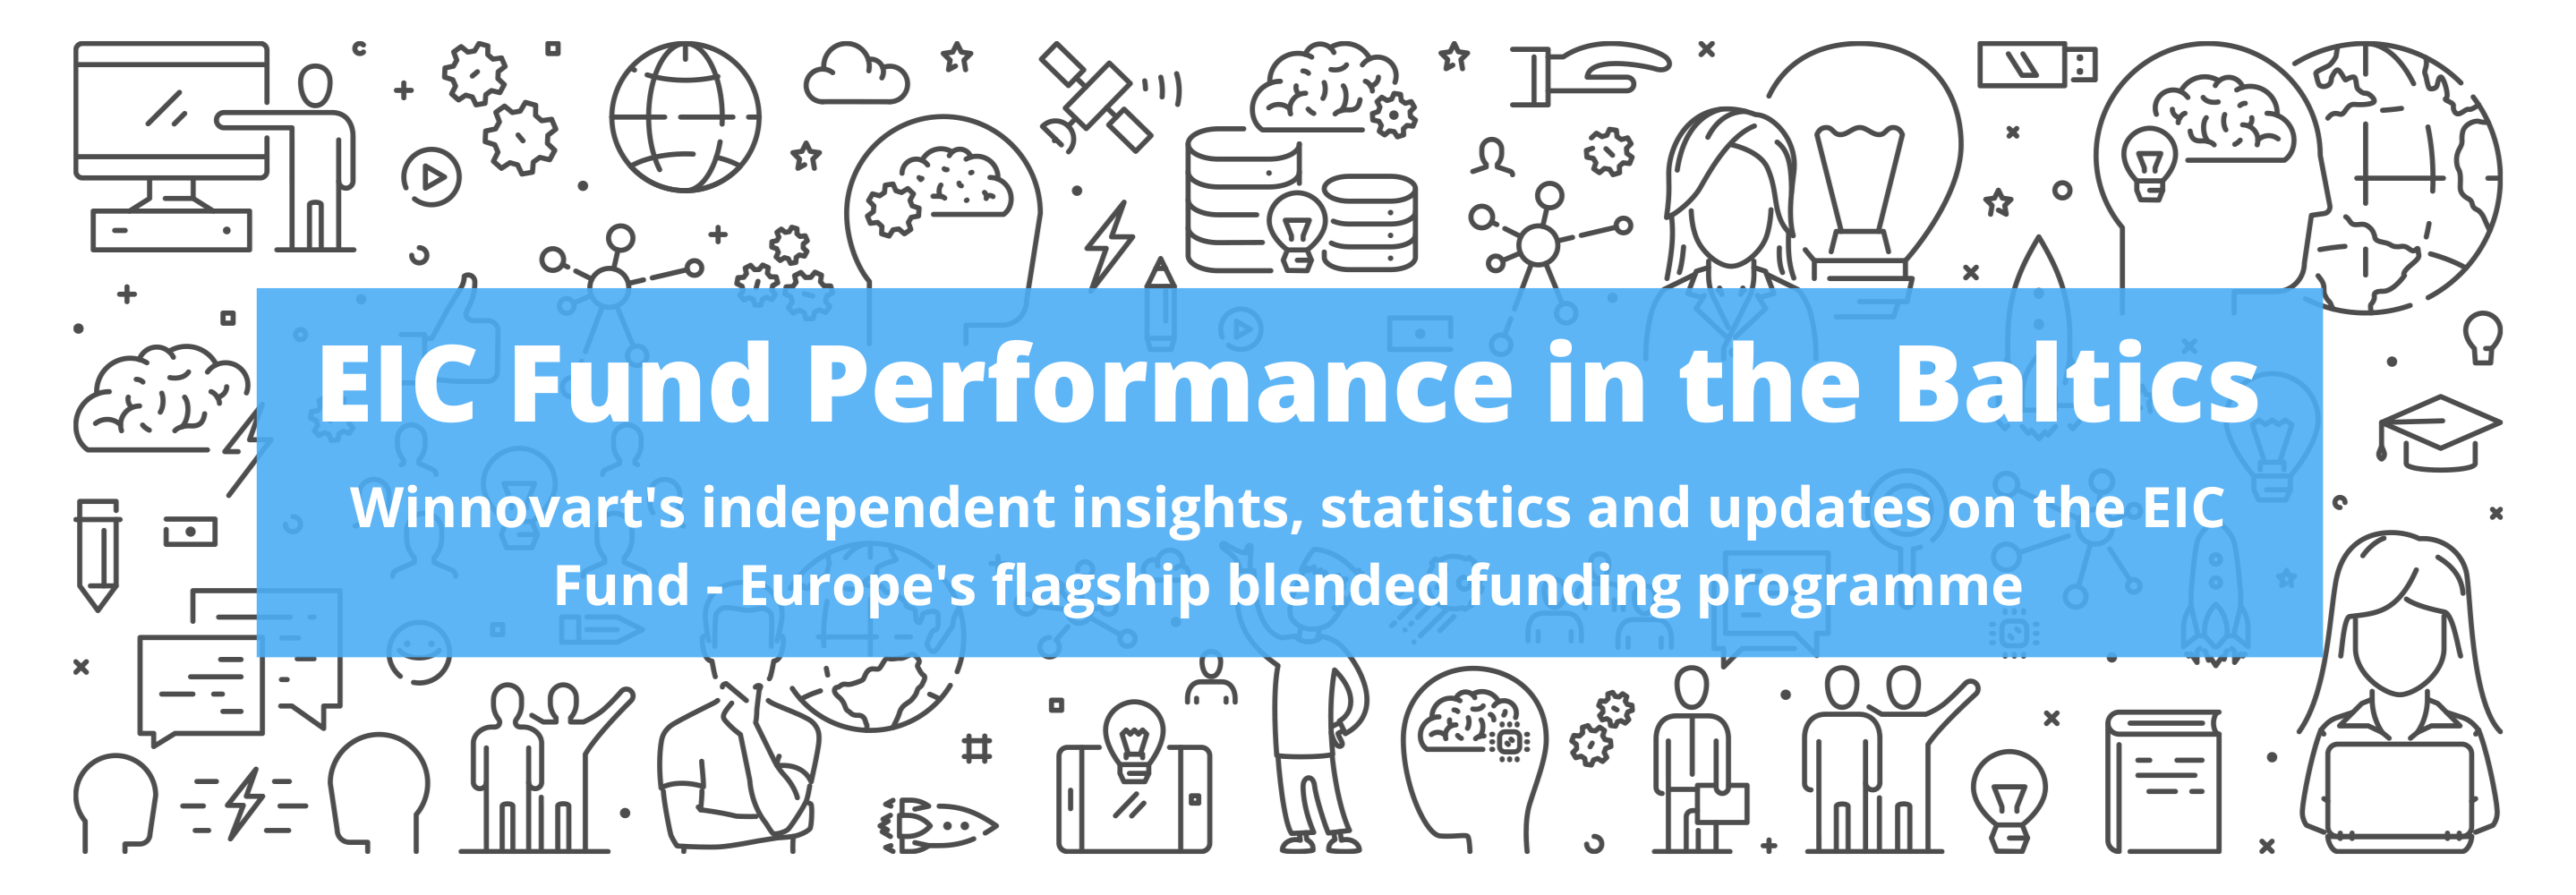 EIC Fund Performance in Baltics